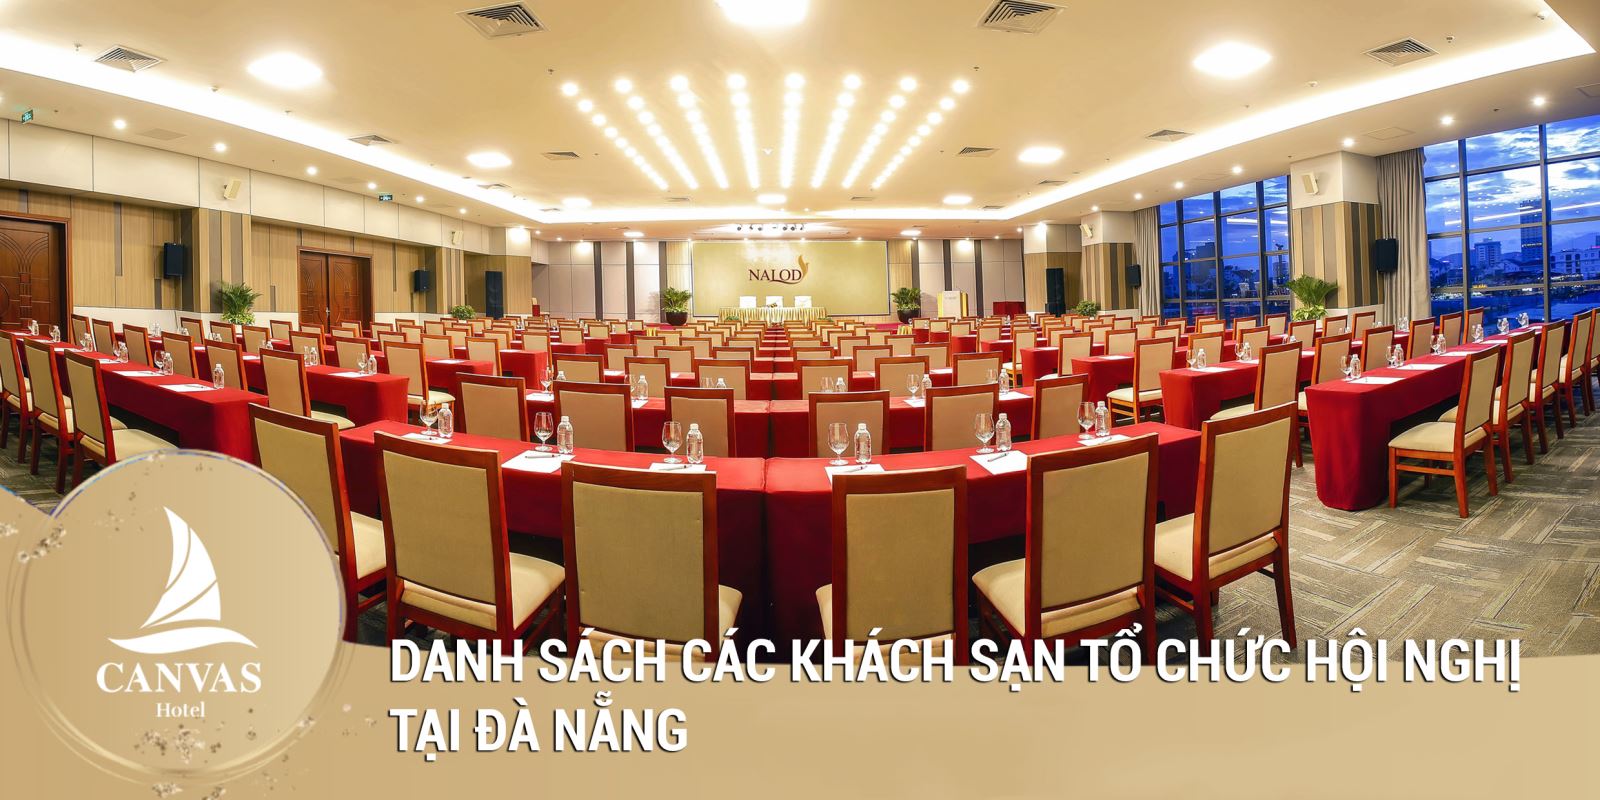 Danh sách các khách sạn tổ chức hội nghị tại Đà Nẵng